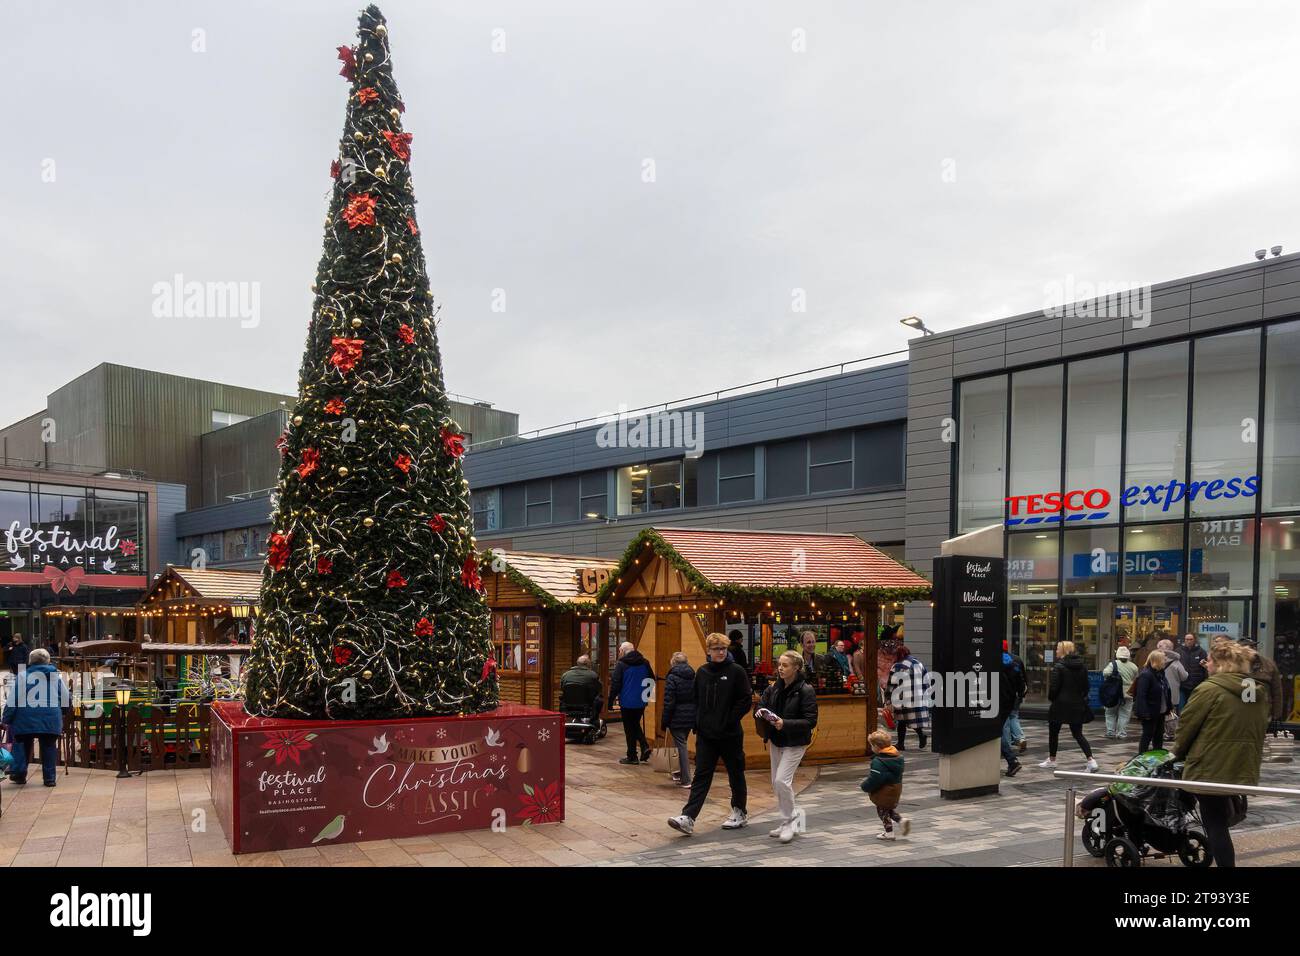 Centro commerciale Festival Place at Christmas, centro di Basingstoke, Hampshire, Inghilterra, Regno Unito. Bancarelle del mercatino di Natale e albero di Natale decorato Foto Stock